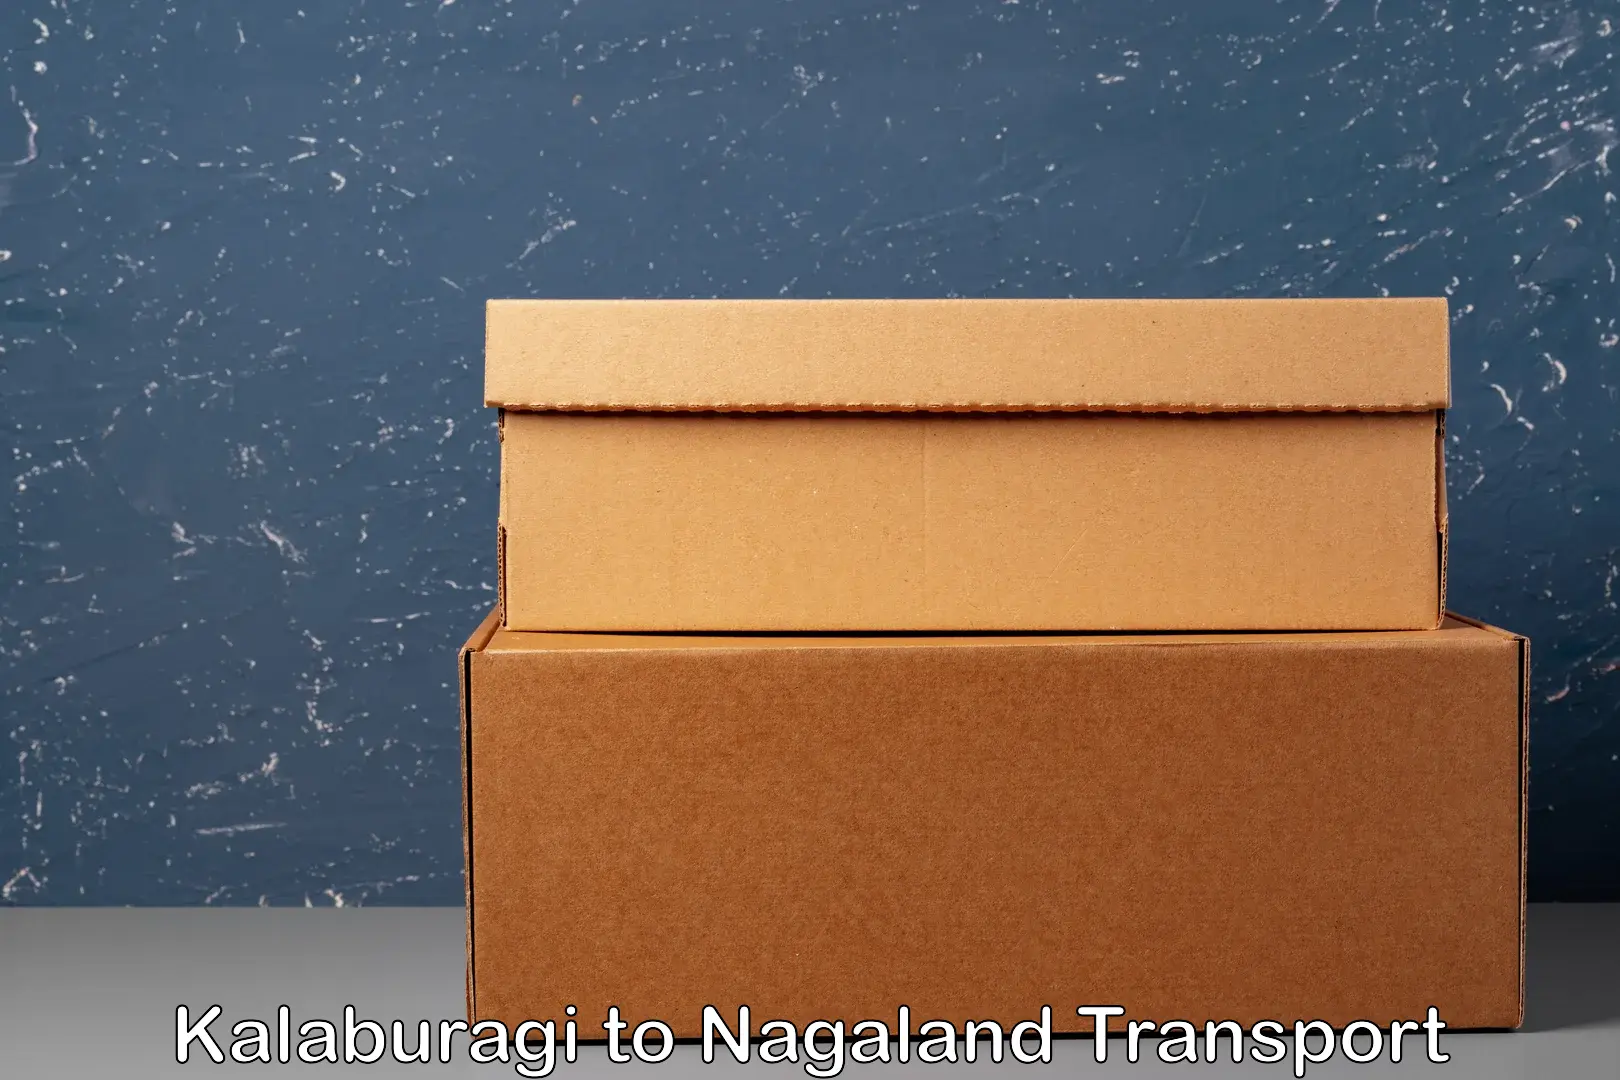 Air cargo transport services Kalaburagi to Nagaland